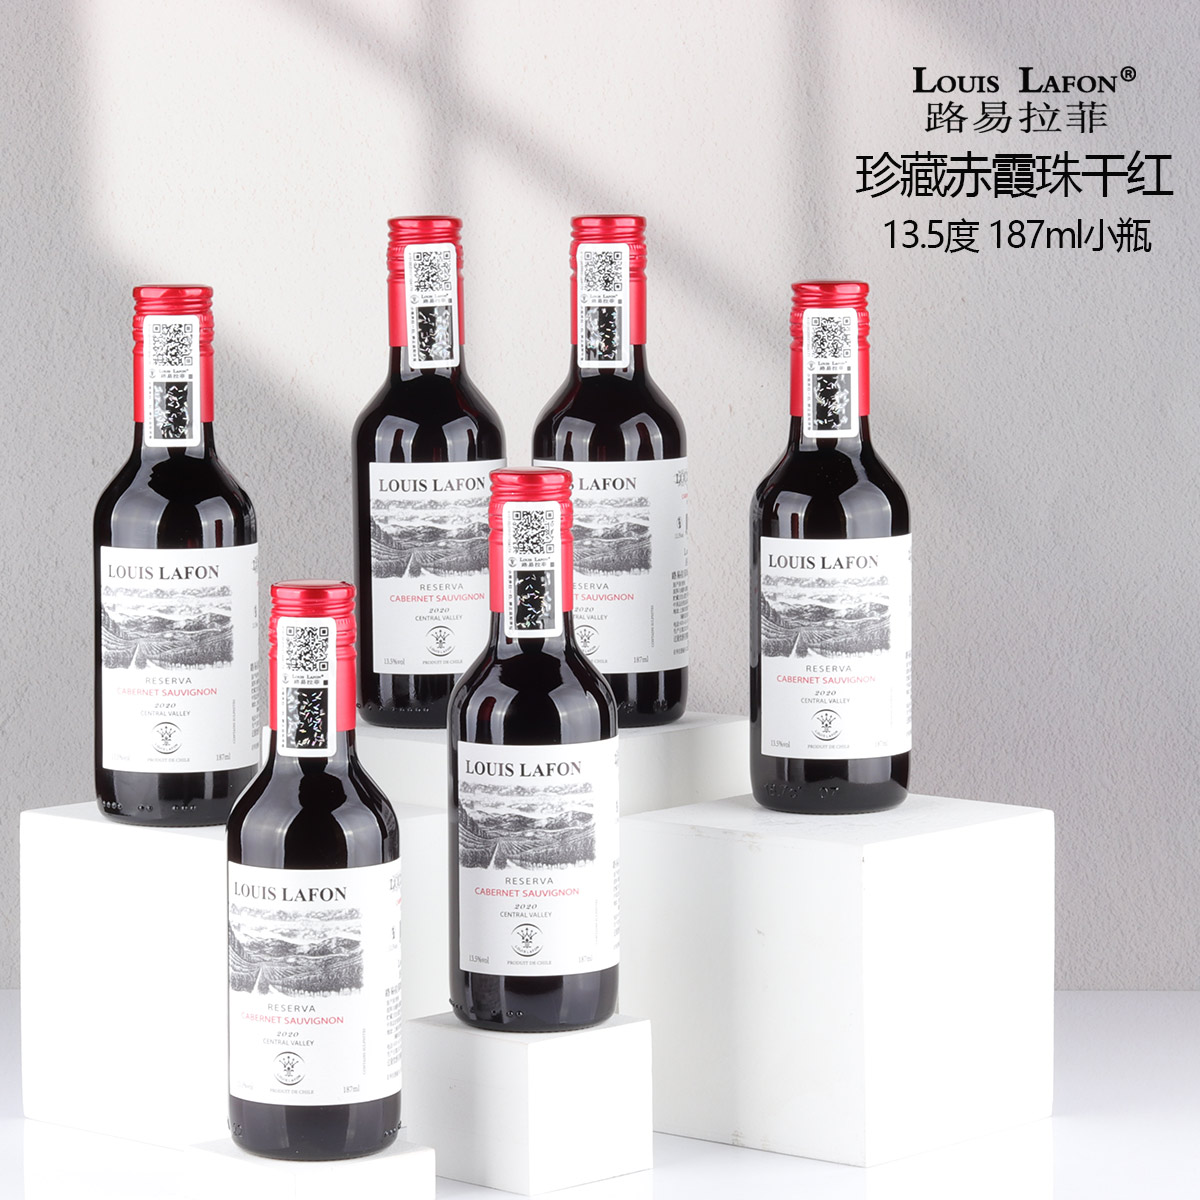 小瓶红酒LOUISLAFON路易拉菲珍藏赤霞珠干红葡萄酒6支装原瓶进口